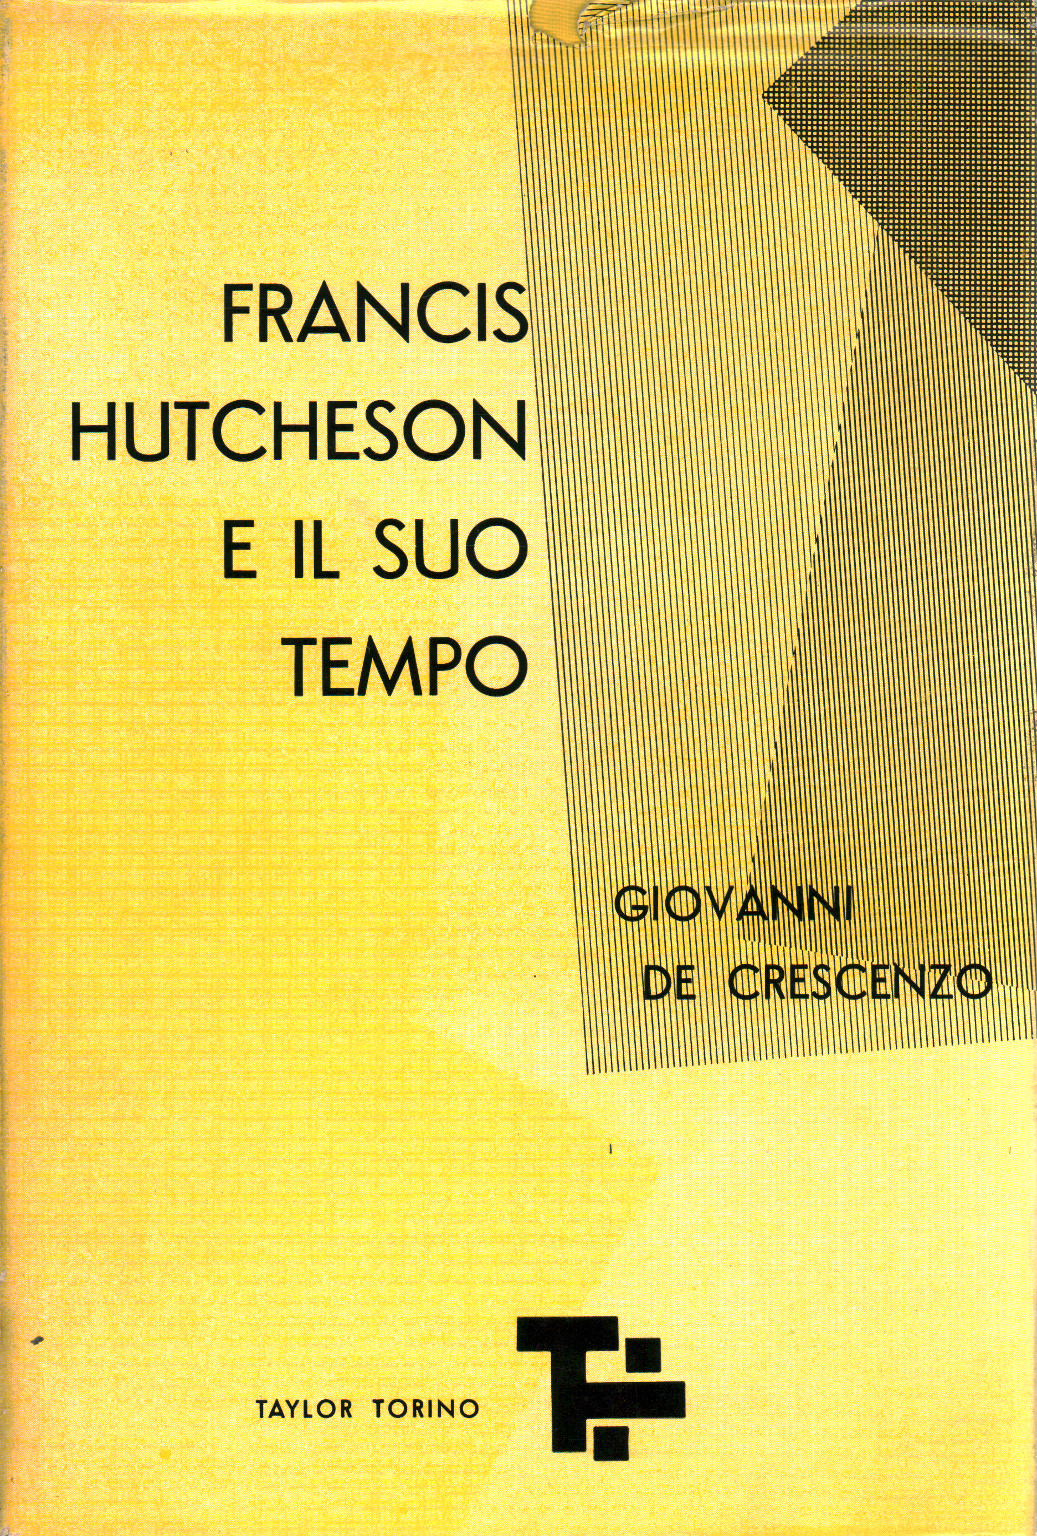 Francis Hutcheson e il suo tempo, s.a.